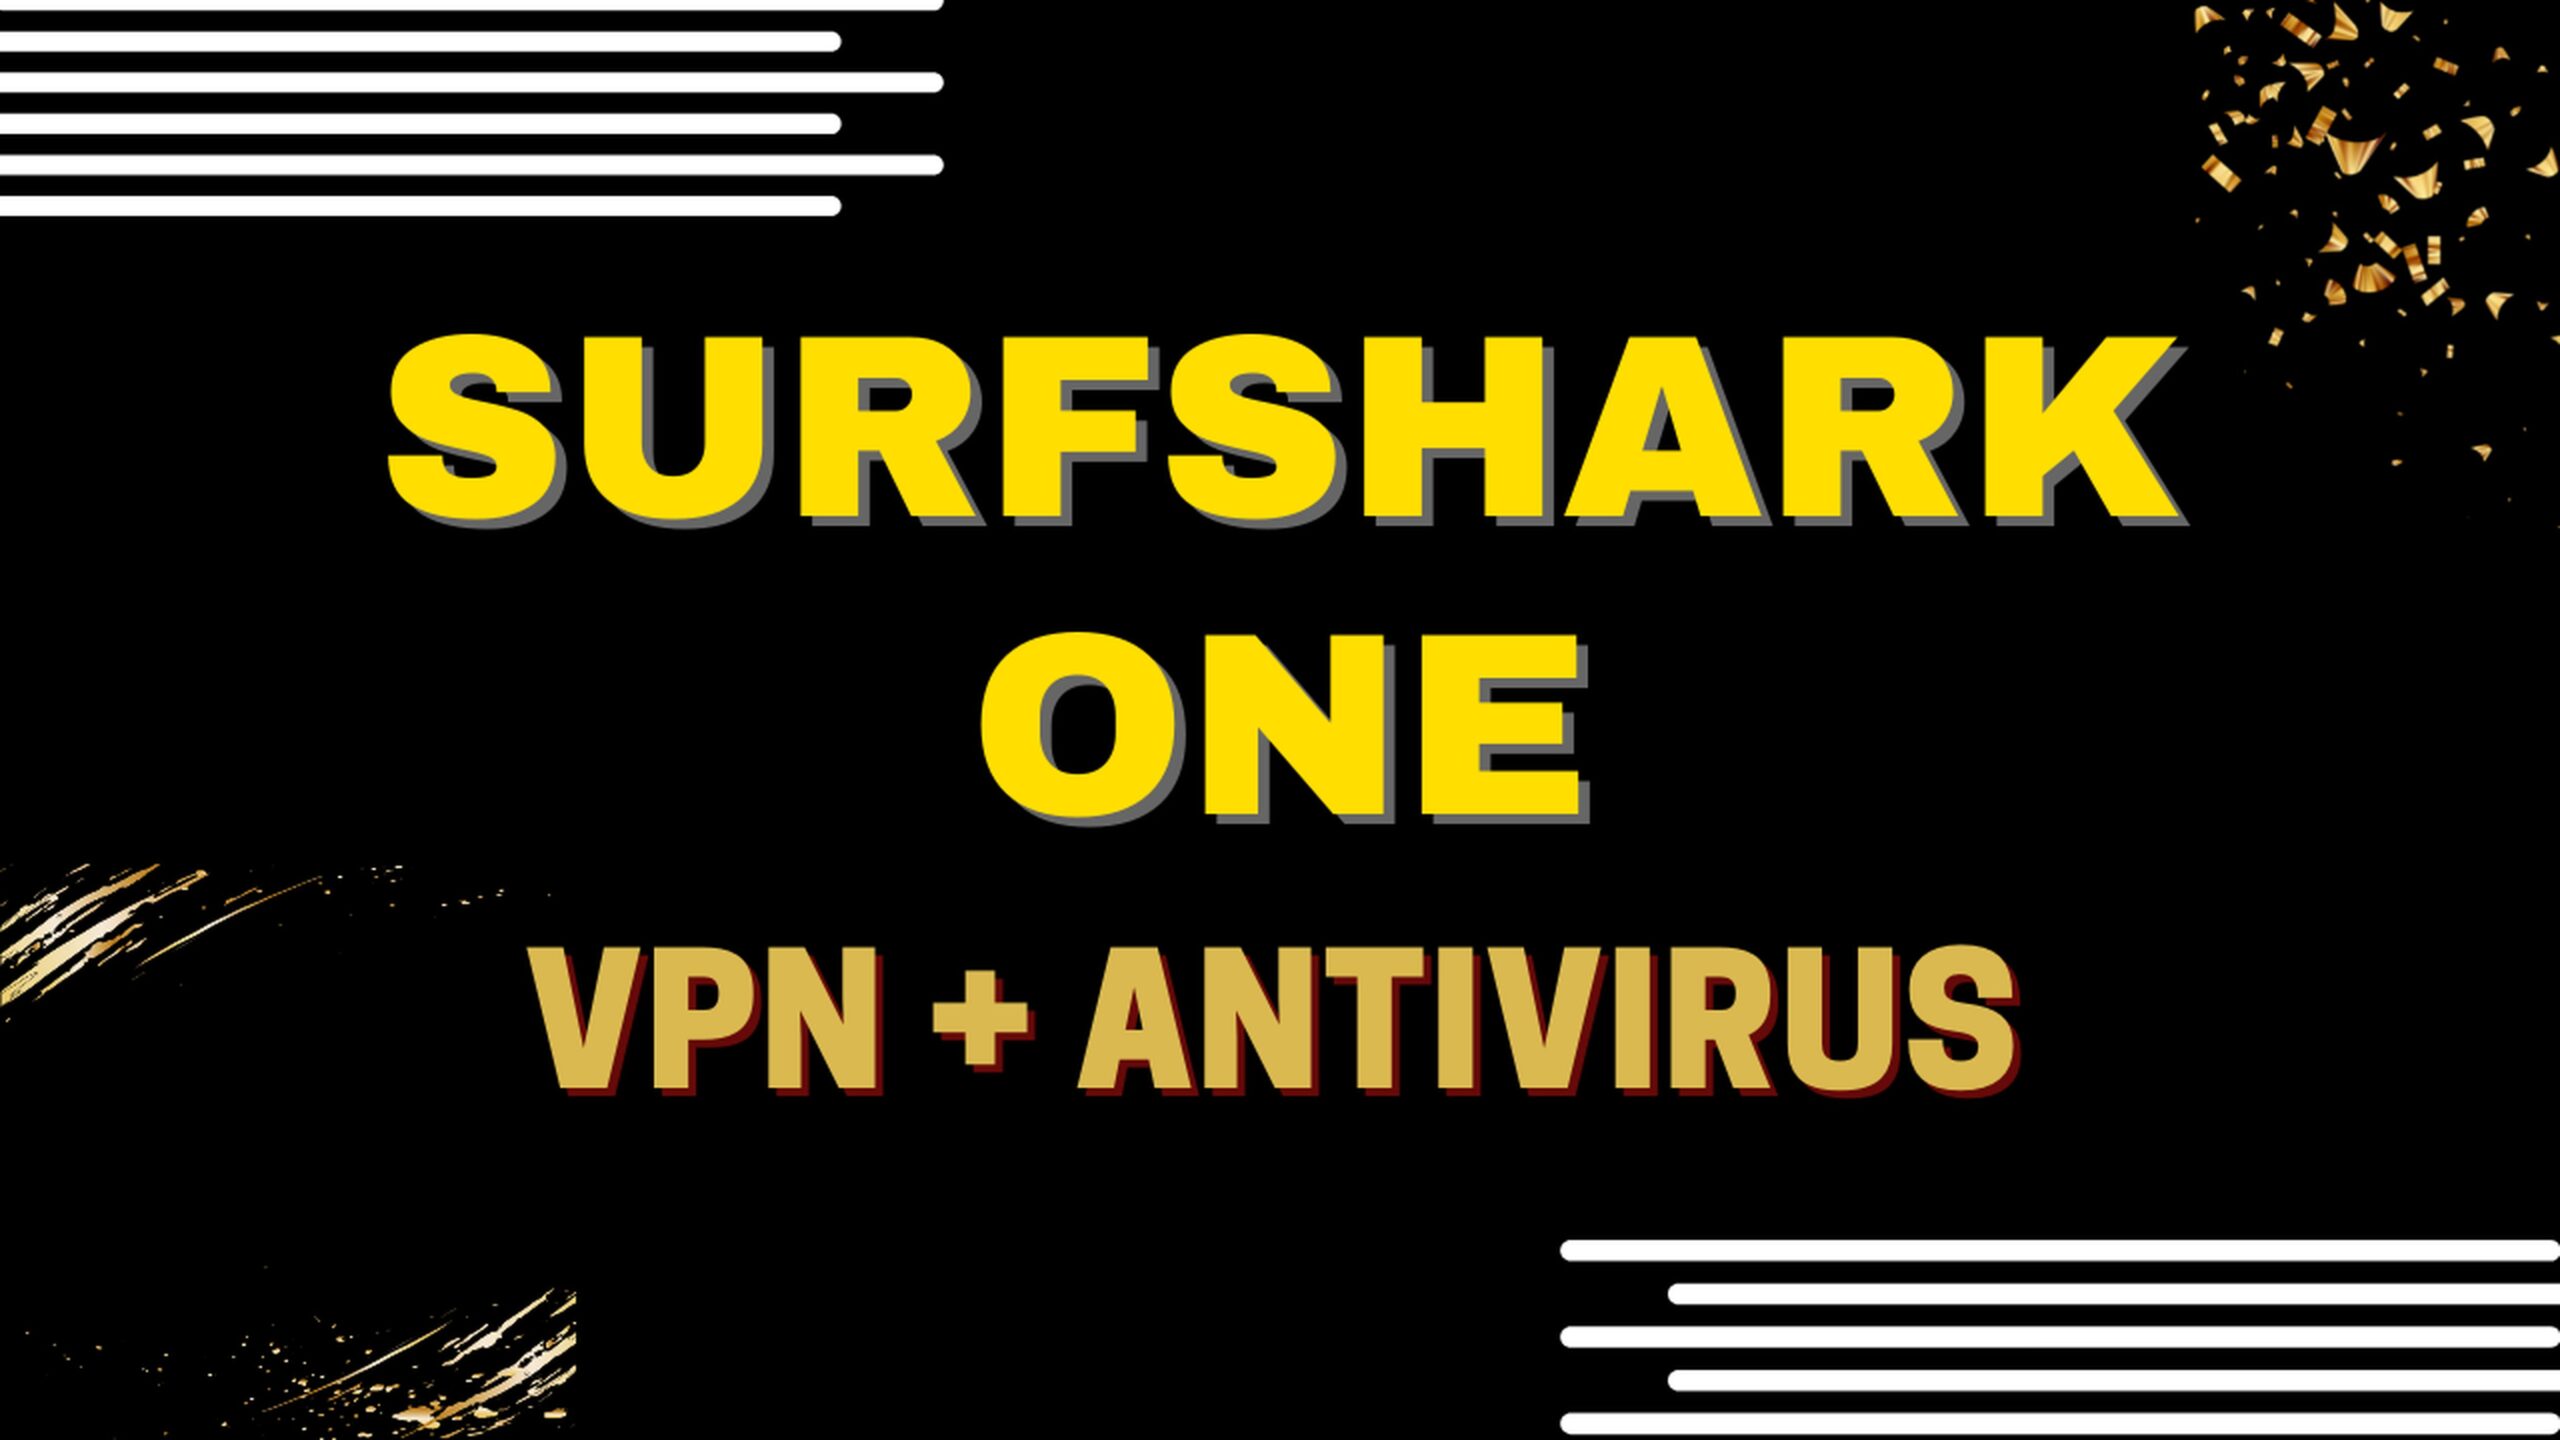 Surfshark One, une offre tout-en-un : VPN + Antivirus